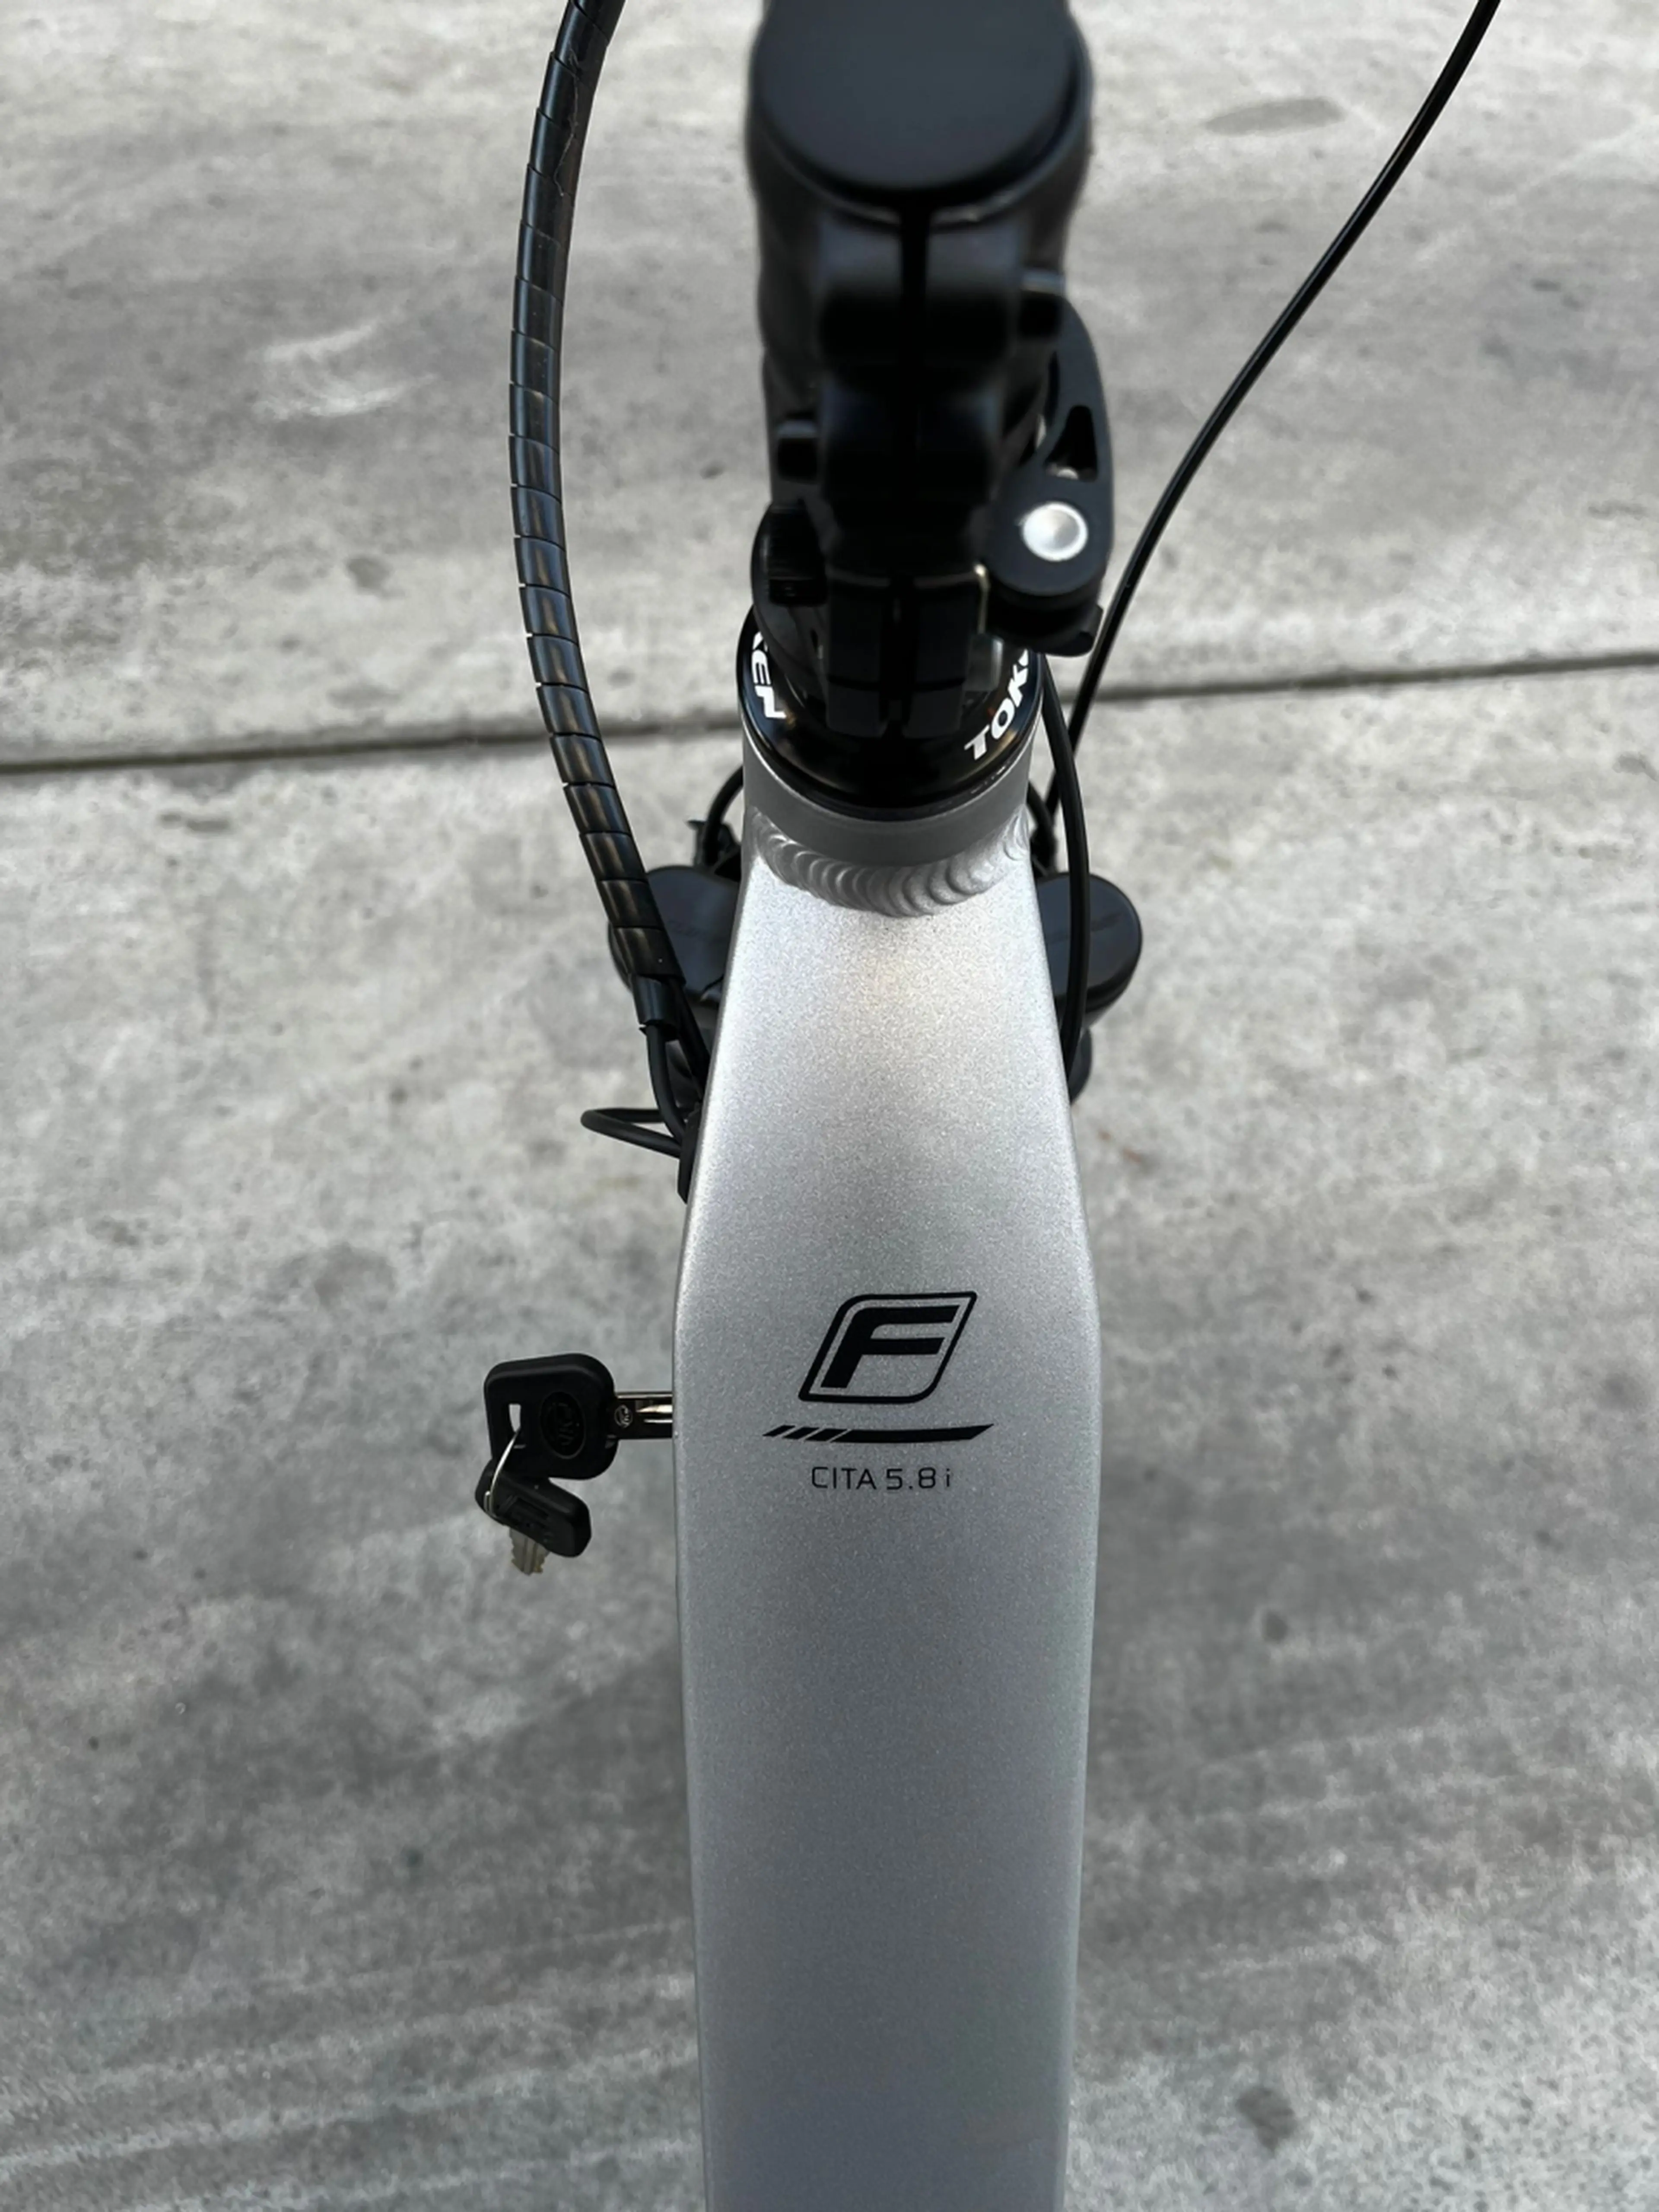 4. Bicicleta electrica Fischer Cita 5.8i